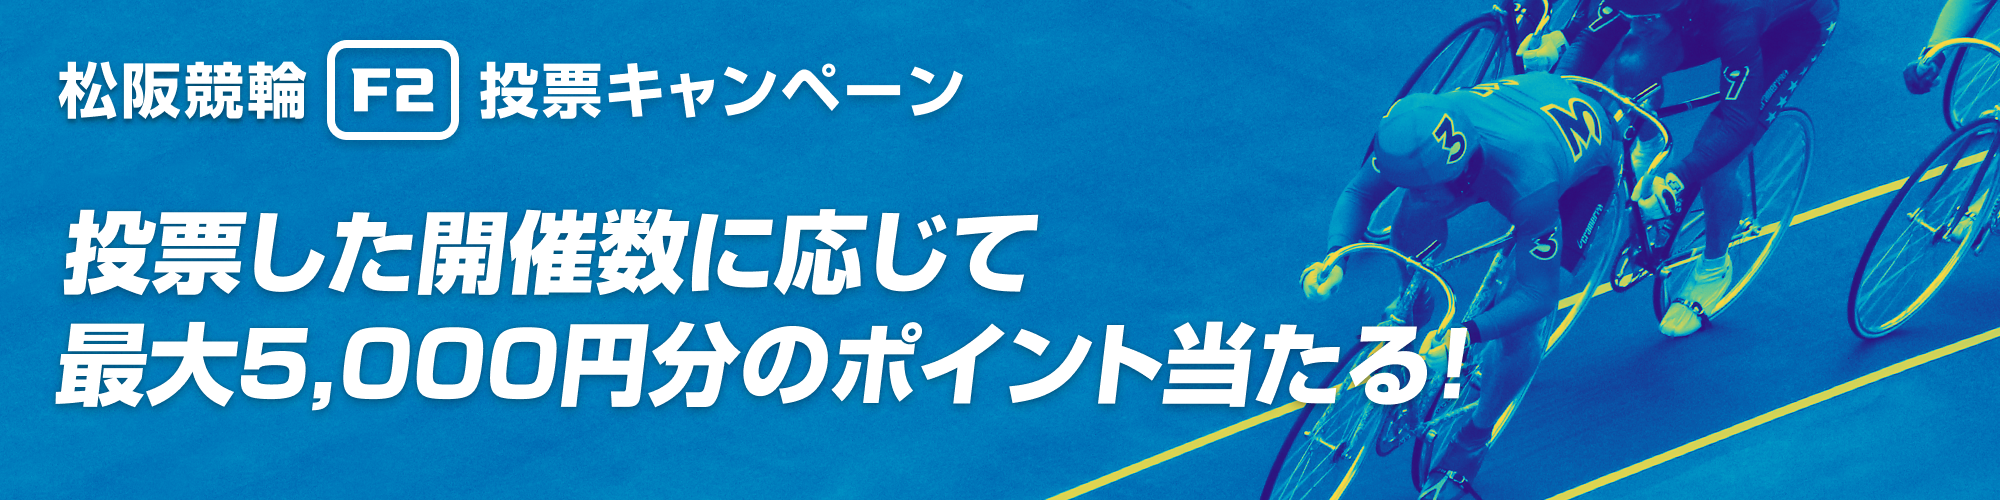 松阪競輪F2ランクアップ投票キャンペーン